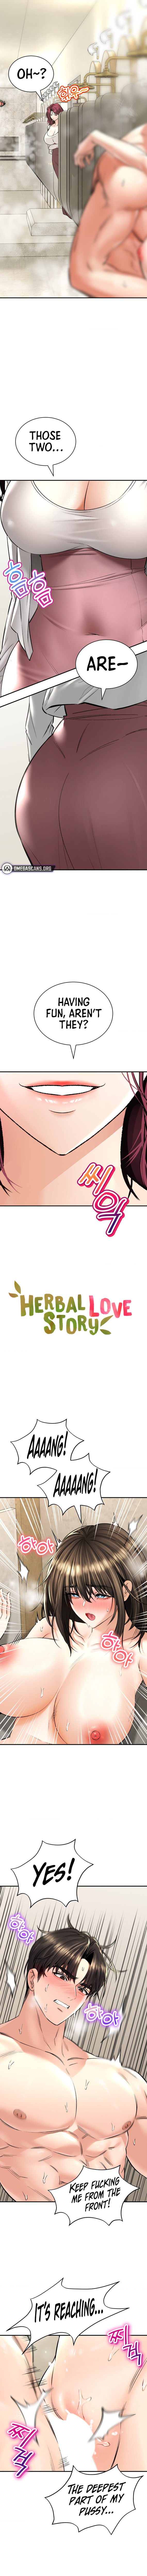 Read manhwa Herbal Love Story Chapter 36 - SauceManhwa.com